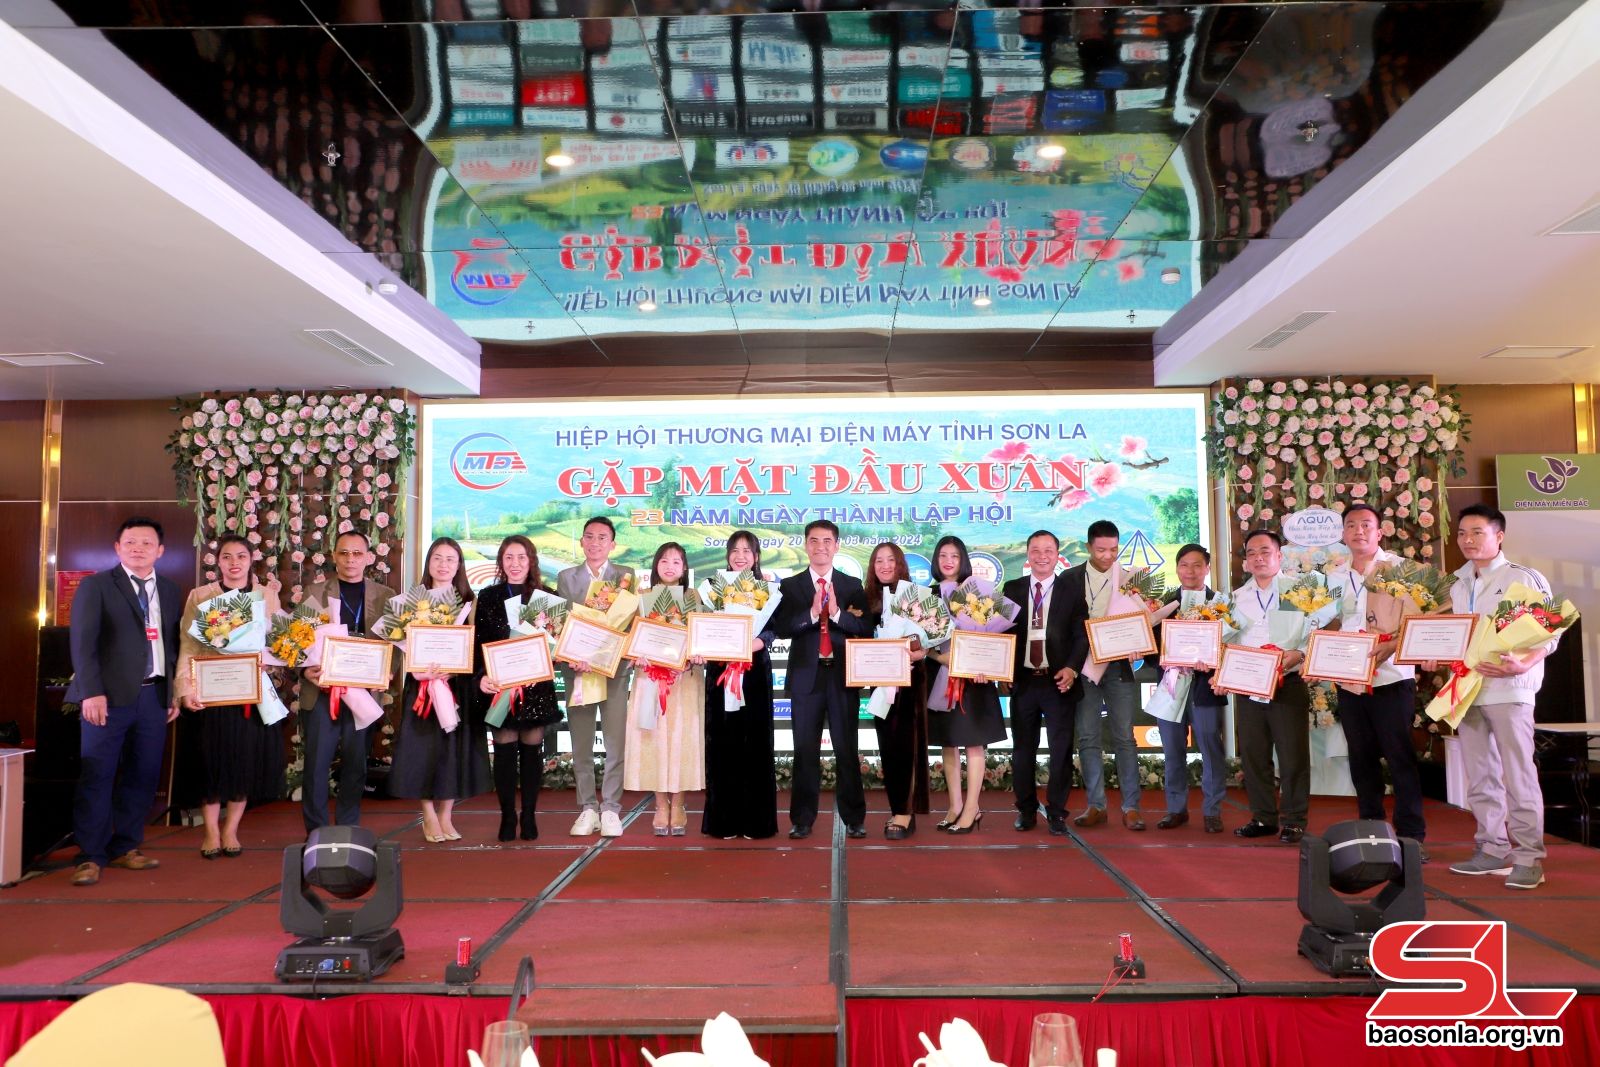 Gặp mặt kỷ niệm 23 năm Ngày thành lập Hiệp hội Thương mại điện máy tỉnh Sơn La